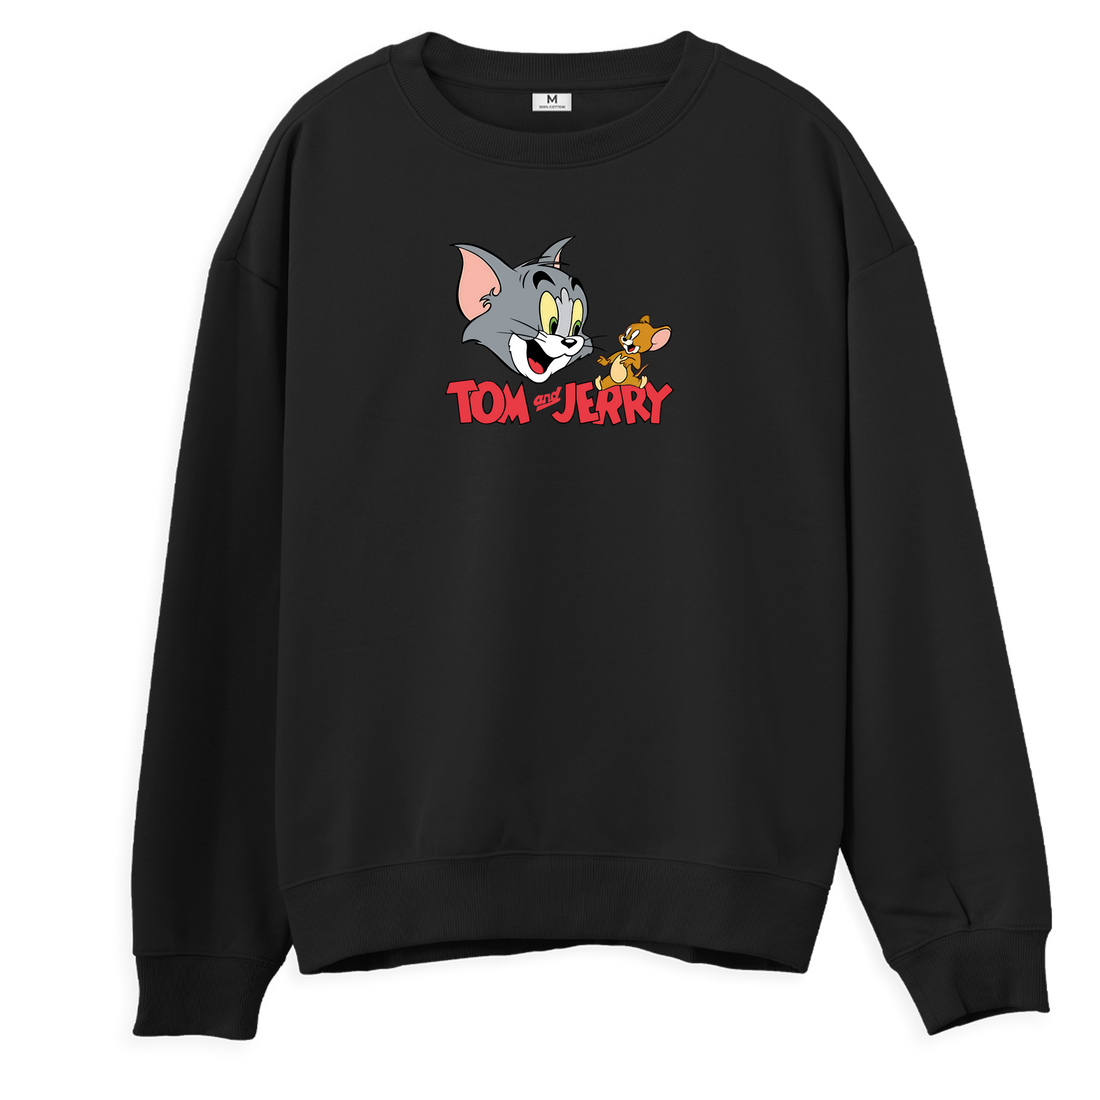 Tom ve Jerry - Sweatshirt